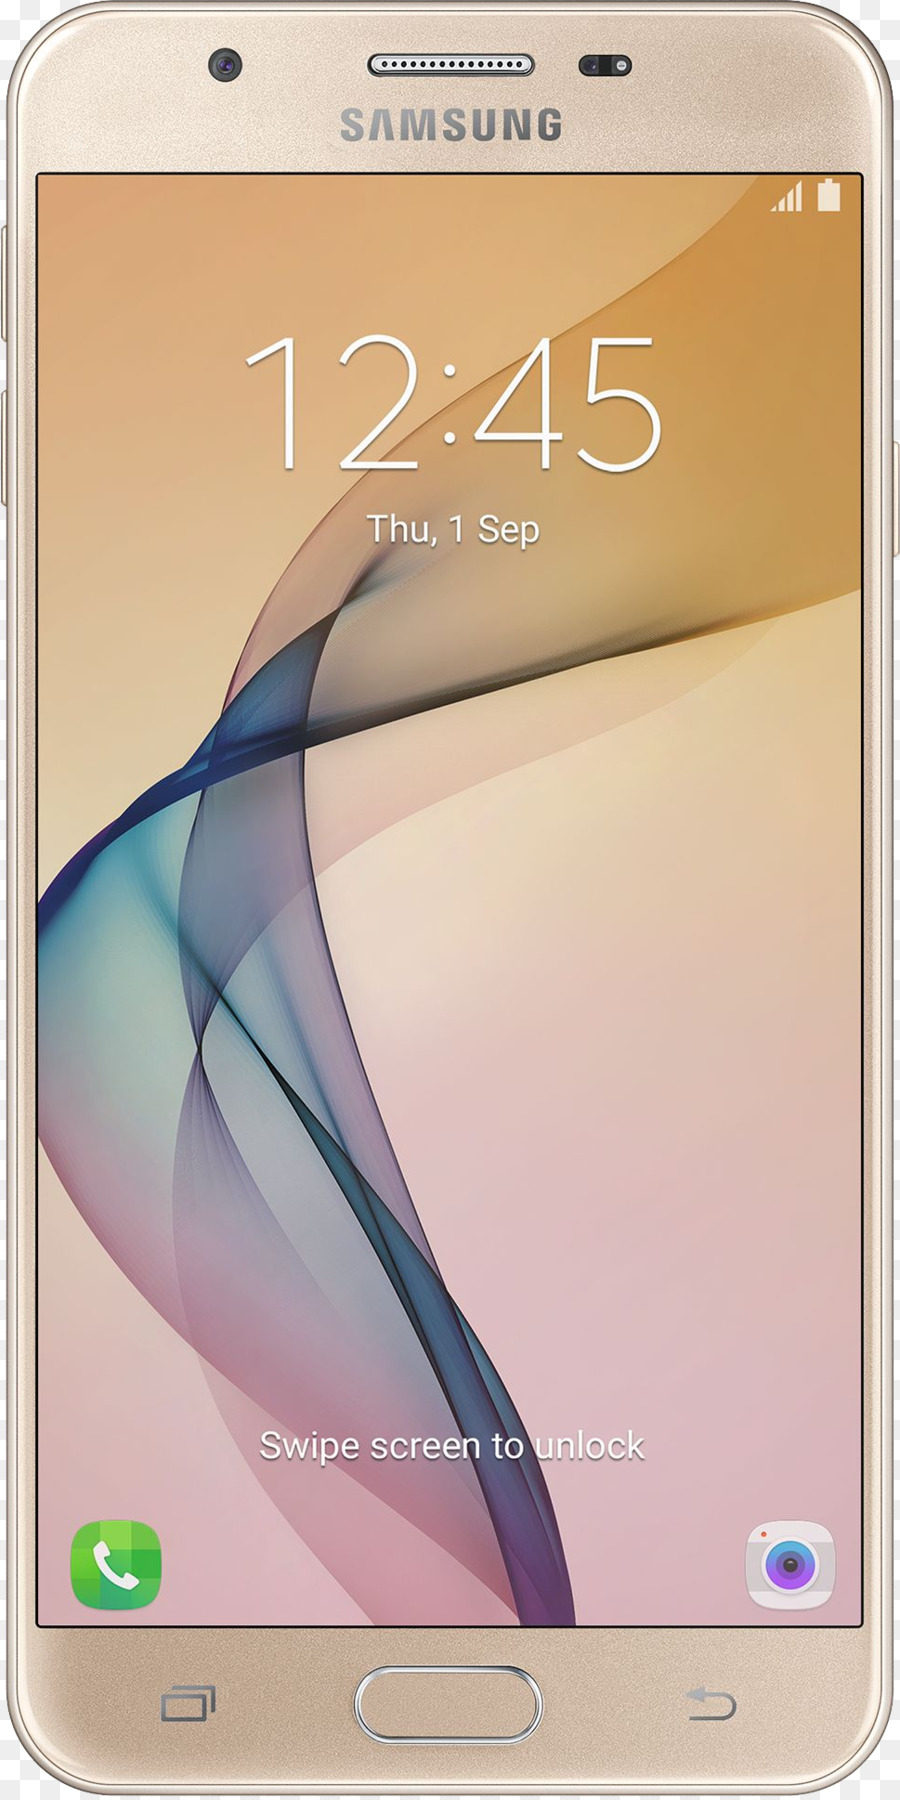 Samsung Galaxy Numarası，2016 Samsung Galaxy J5 PNG